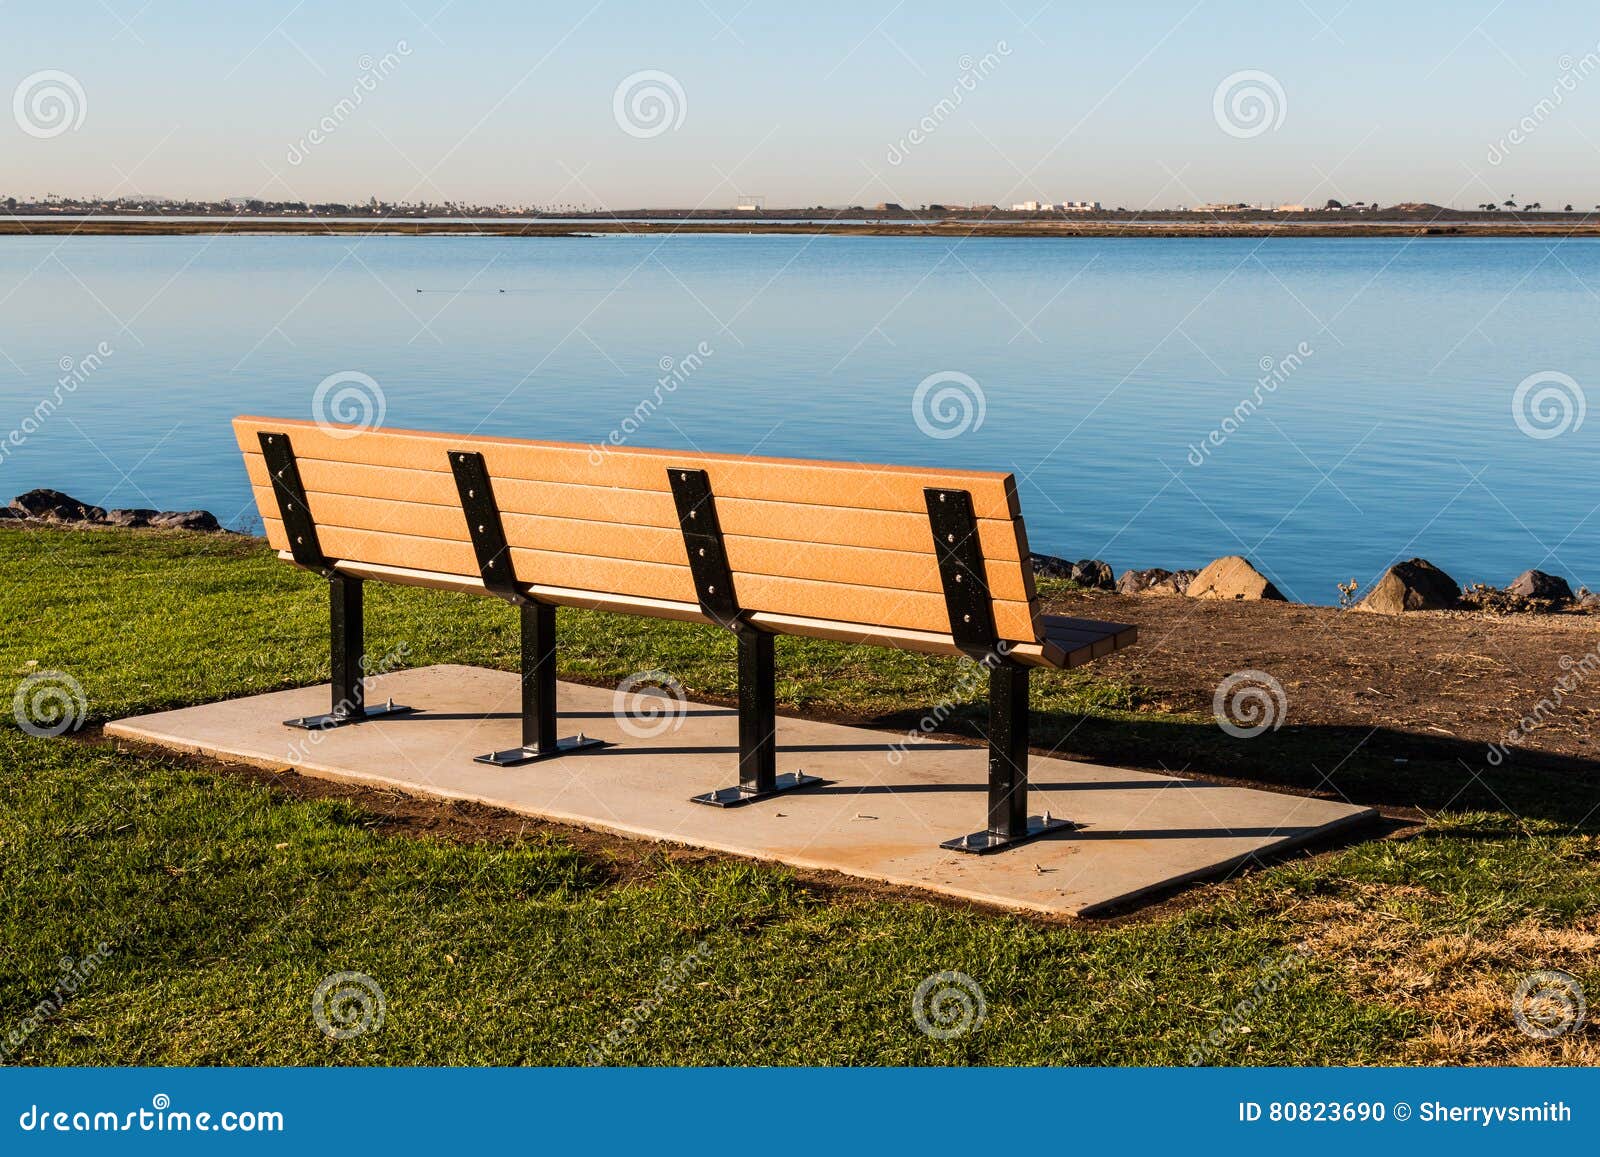 empty bench at chula vista bayfront park